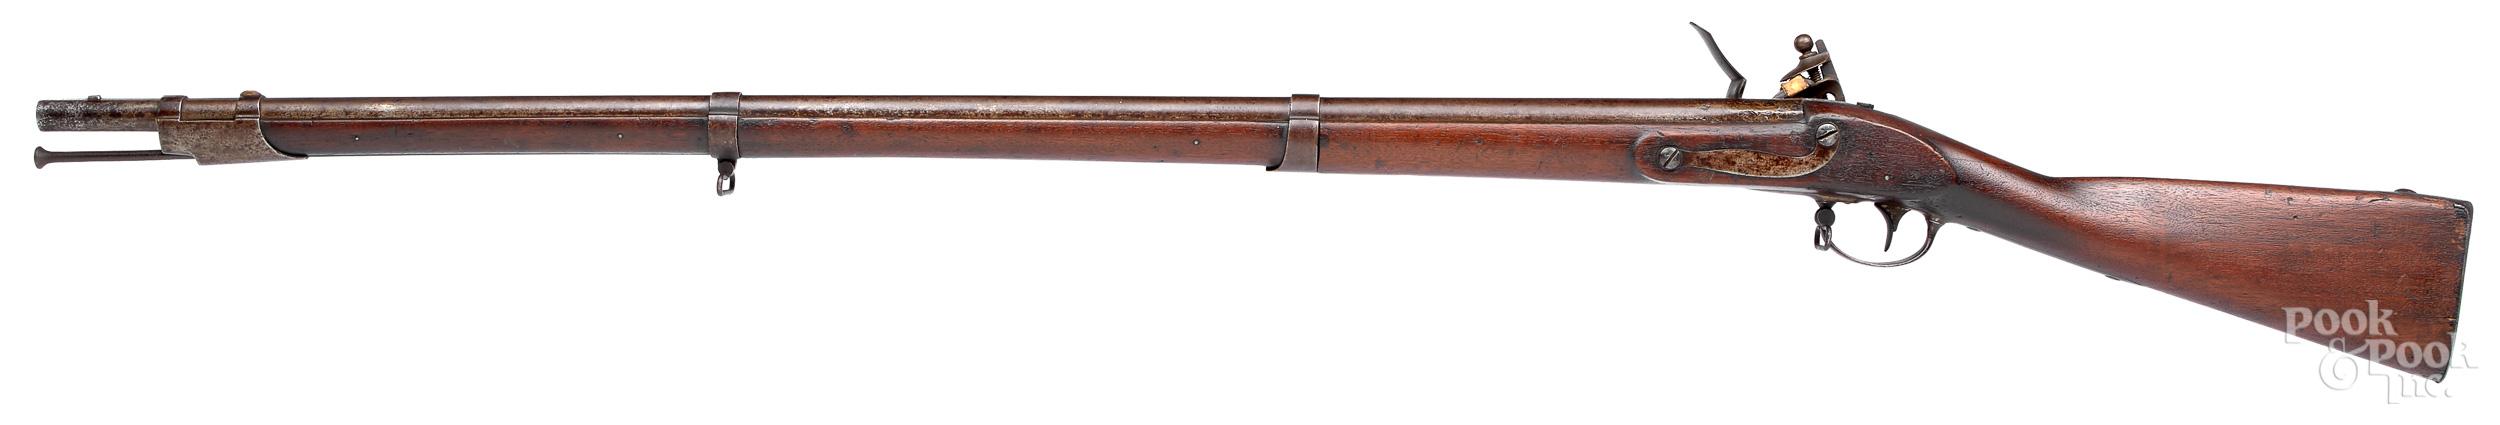 Harpers Ferry model 1816 flintlock musket